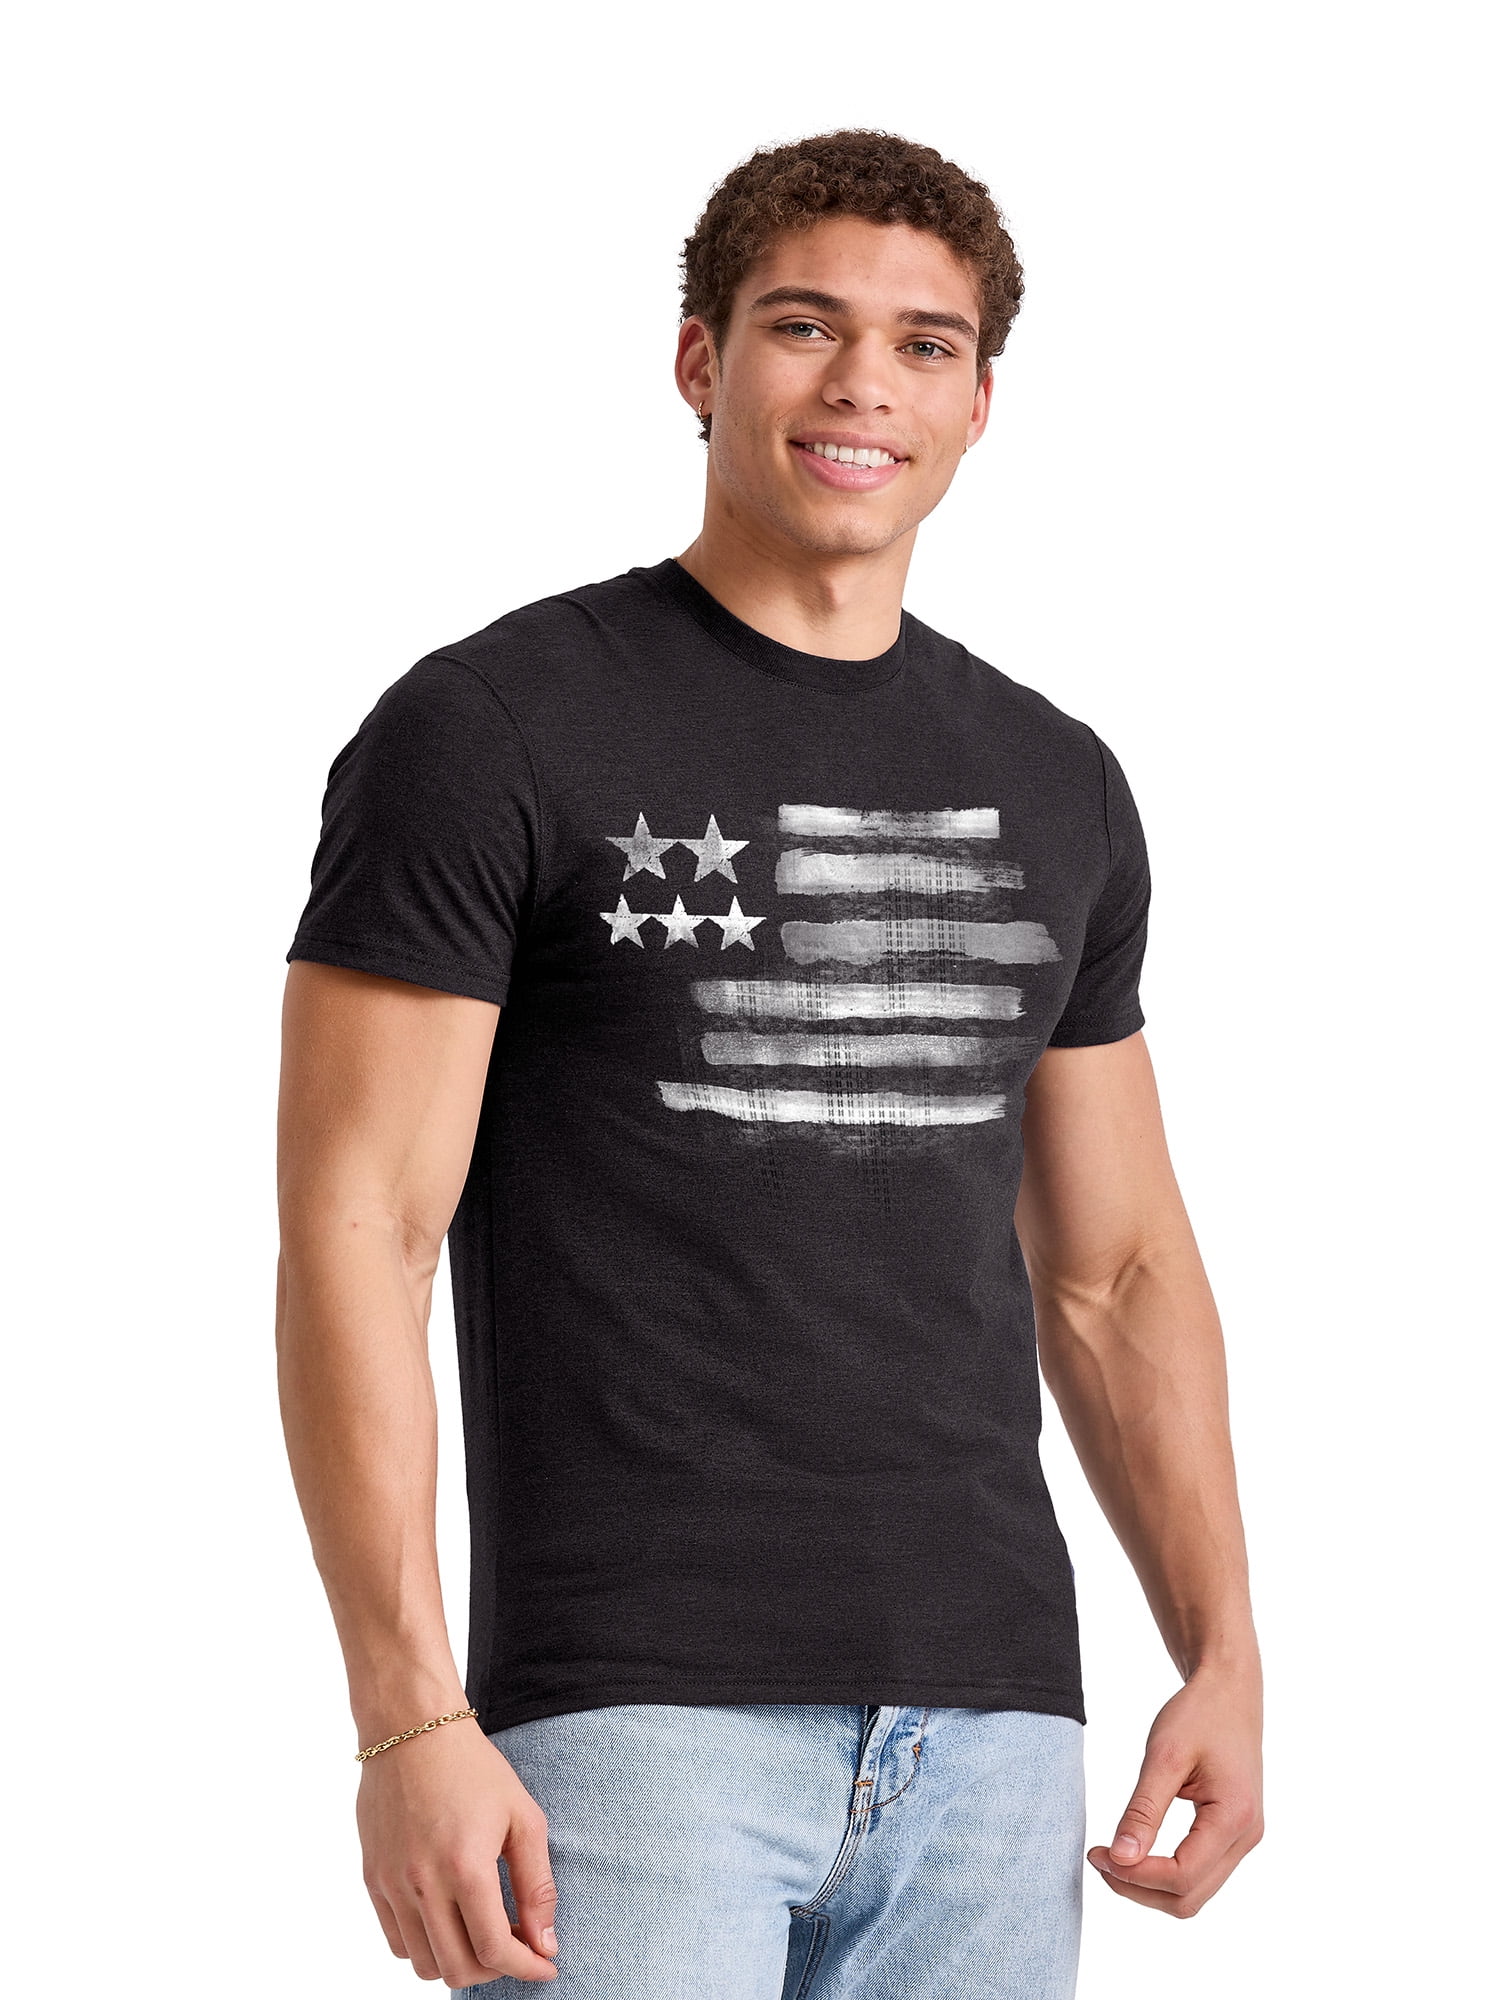 Men's Lightweight Graphic T-shirt - Collection - Walmart.com